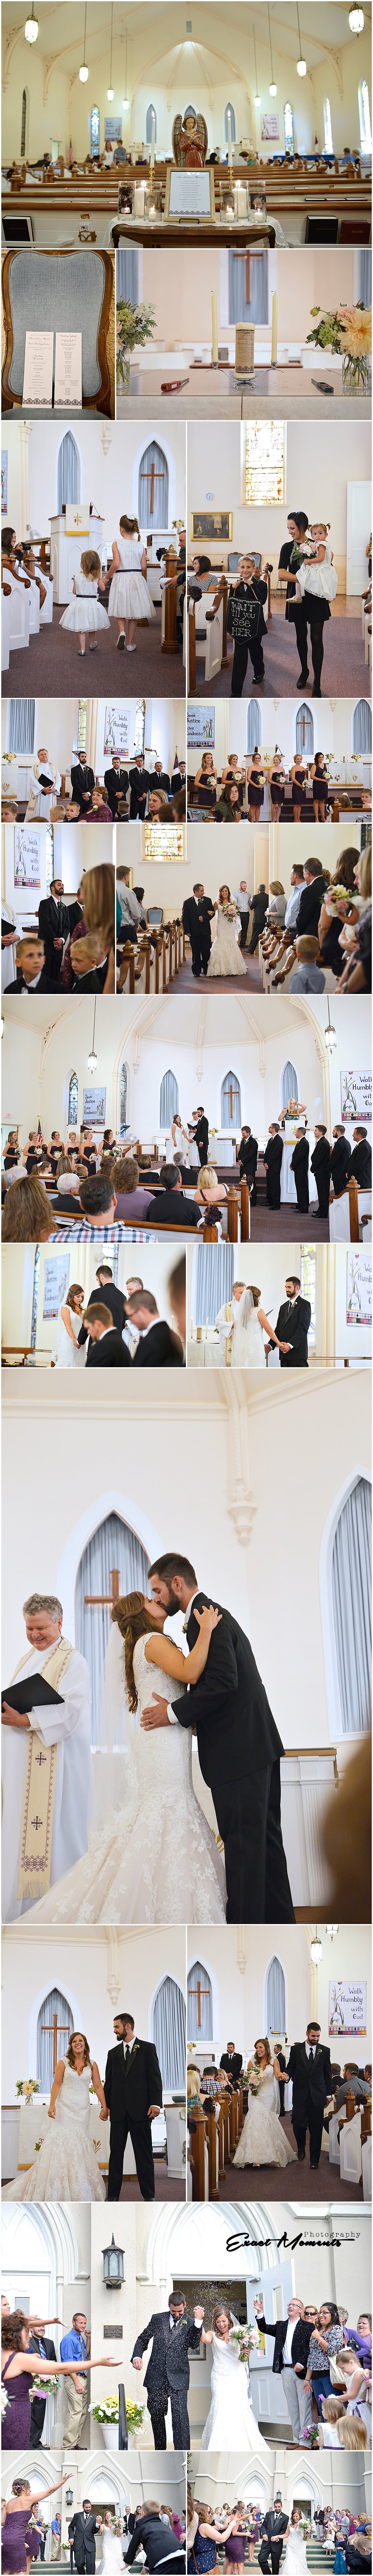 3_First Congregational Church Mount Vernon Ohio Wedding